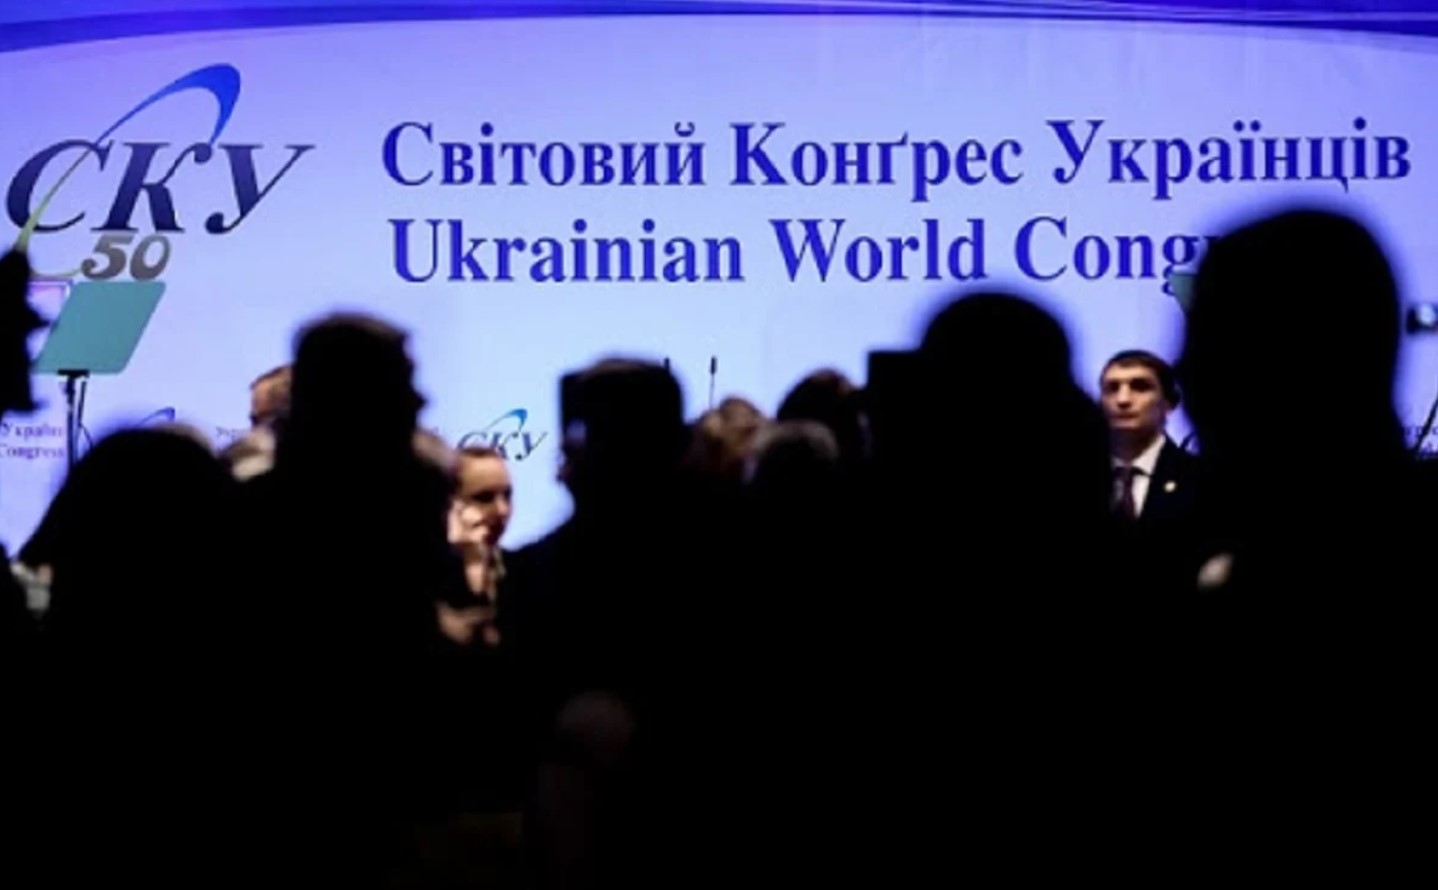 Всемирный конгресс украинцев исключил представителей Латвии за антиукраинскую позицию